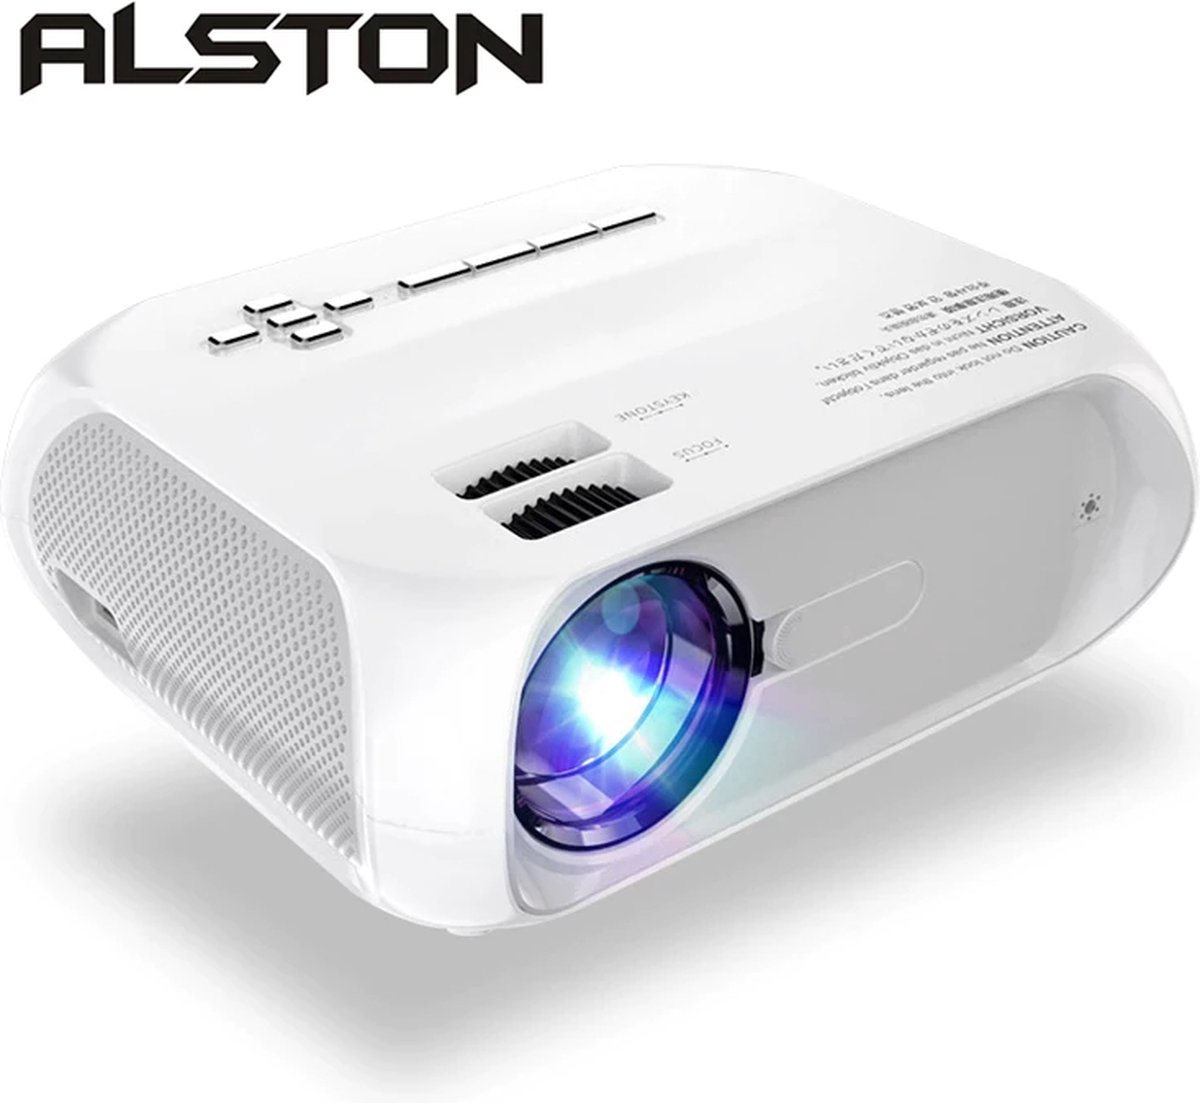 Alston Mini beamer - Projector - Voor Smartphone – Gemakkelijk Streamen vanaf je telefoon voor Android & IOS - Full HD 1920 x 1080P - 4500 Lumen - Inclusief 3D functie - Inclusief 2 3D brillen